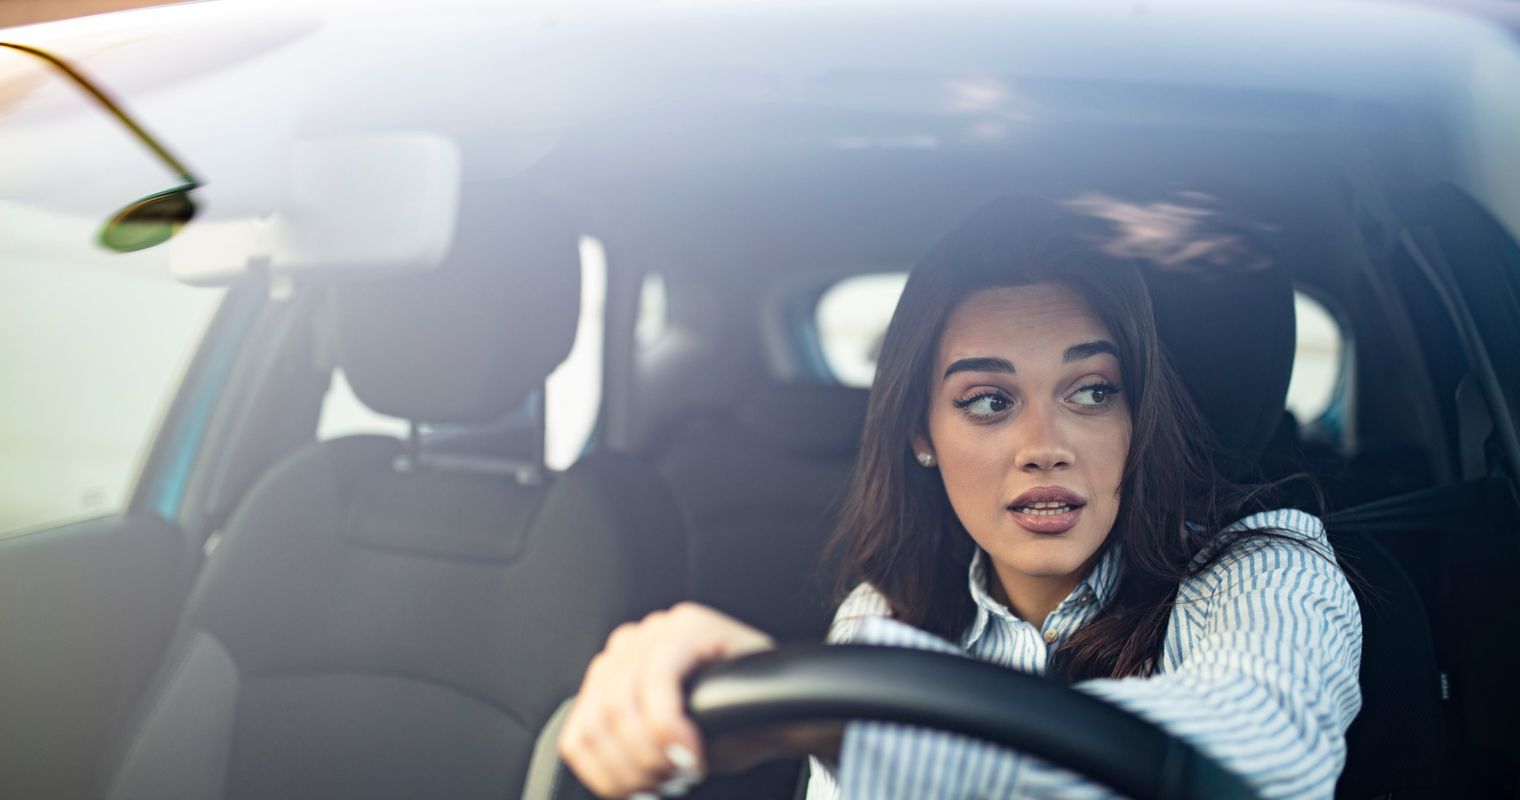 Autofahren: Frauen sind mies, Männer ticken völlig aus